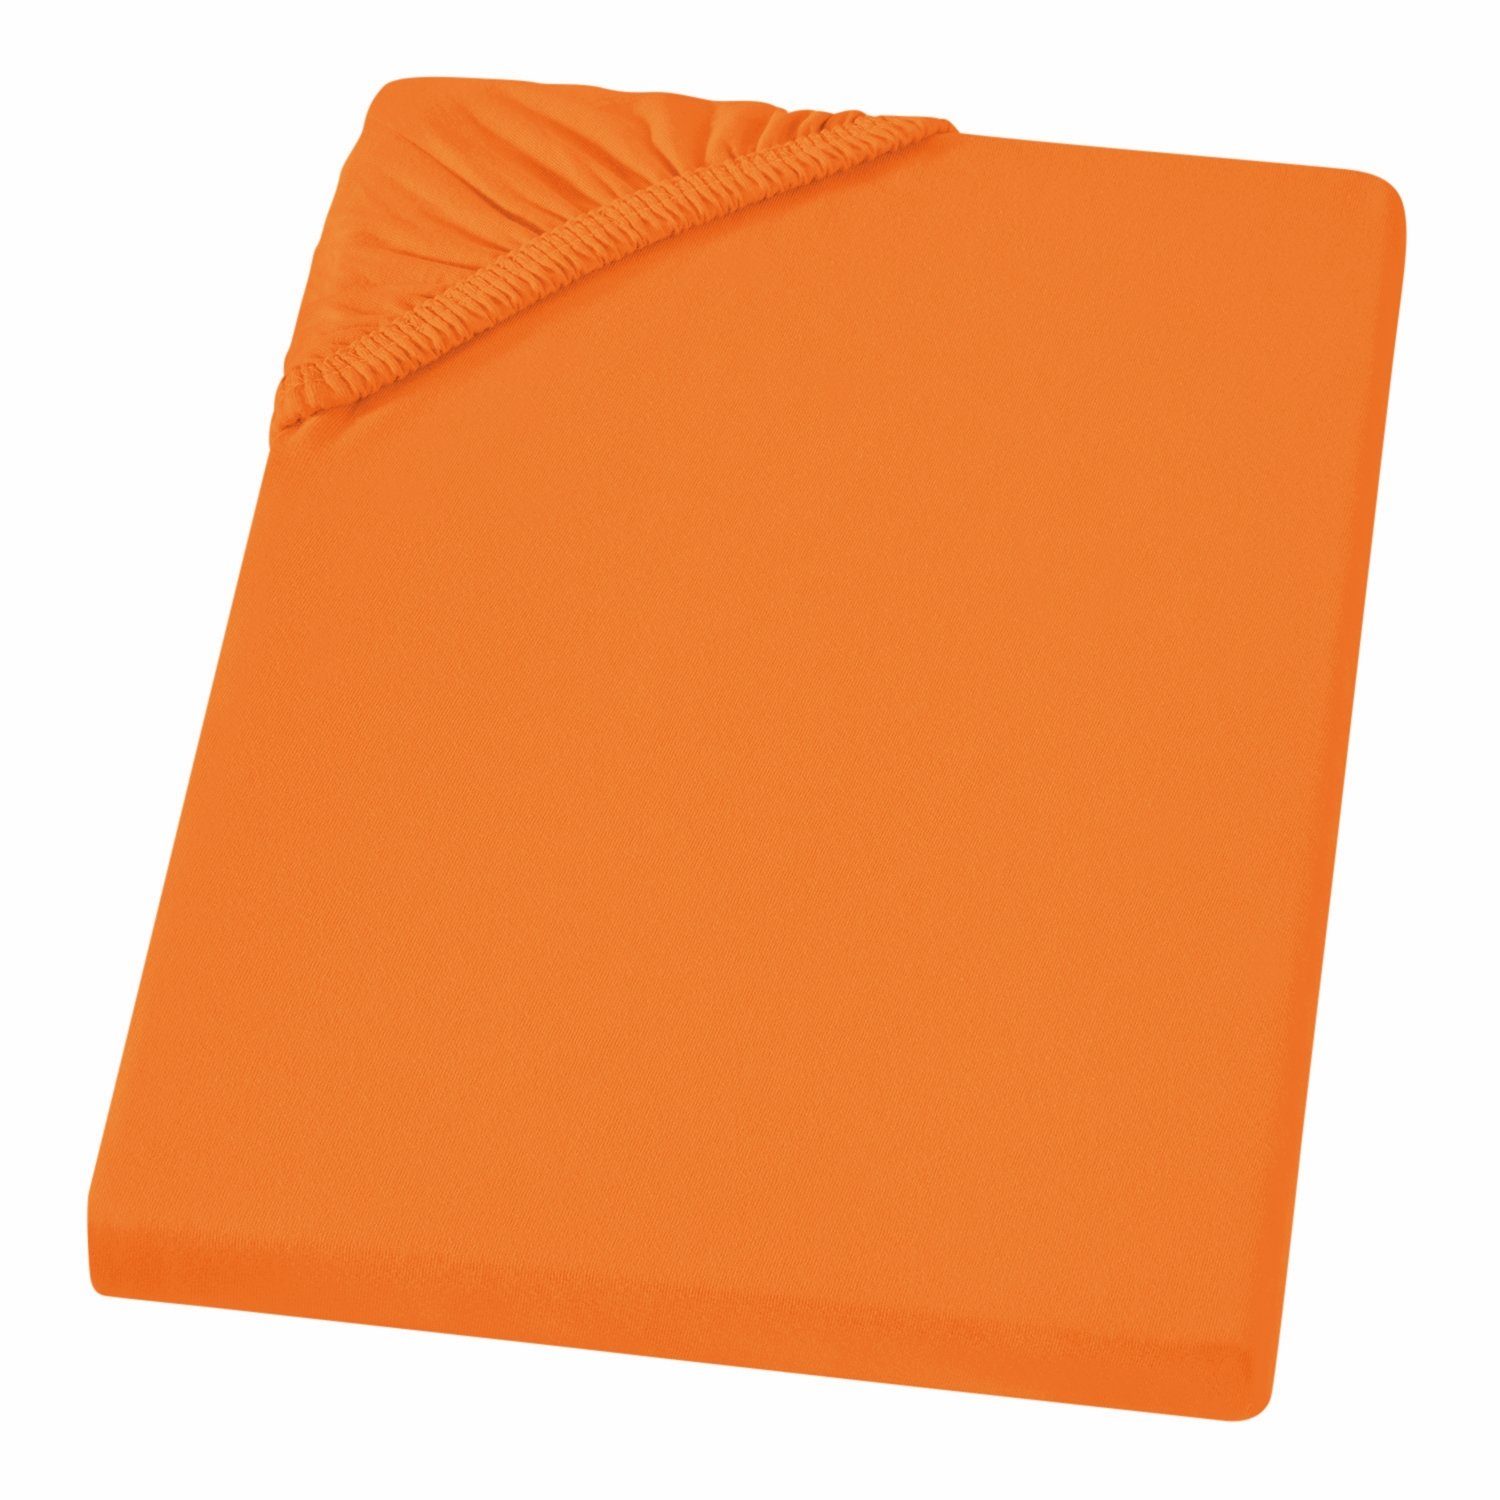 Orange Bettlaken online kaufen | OTTO